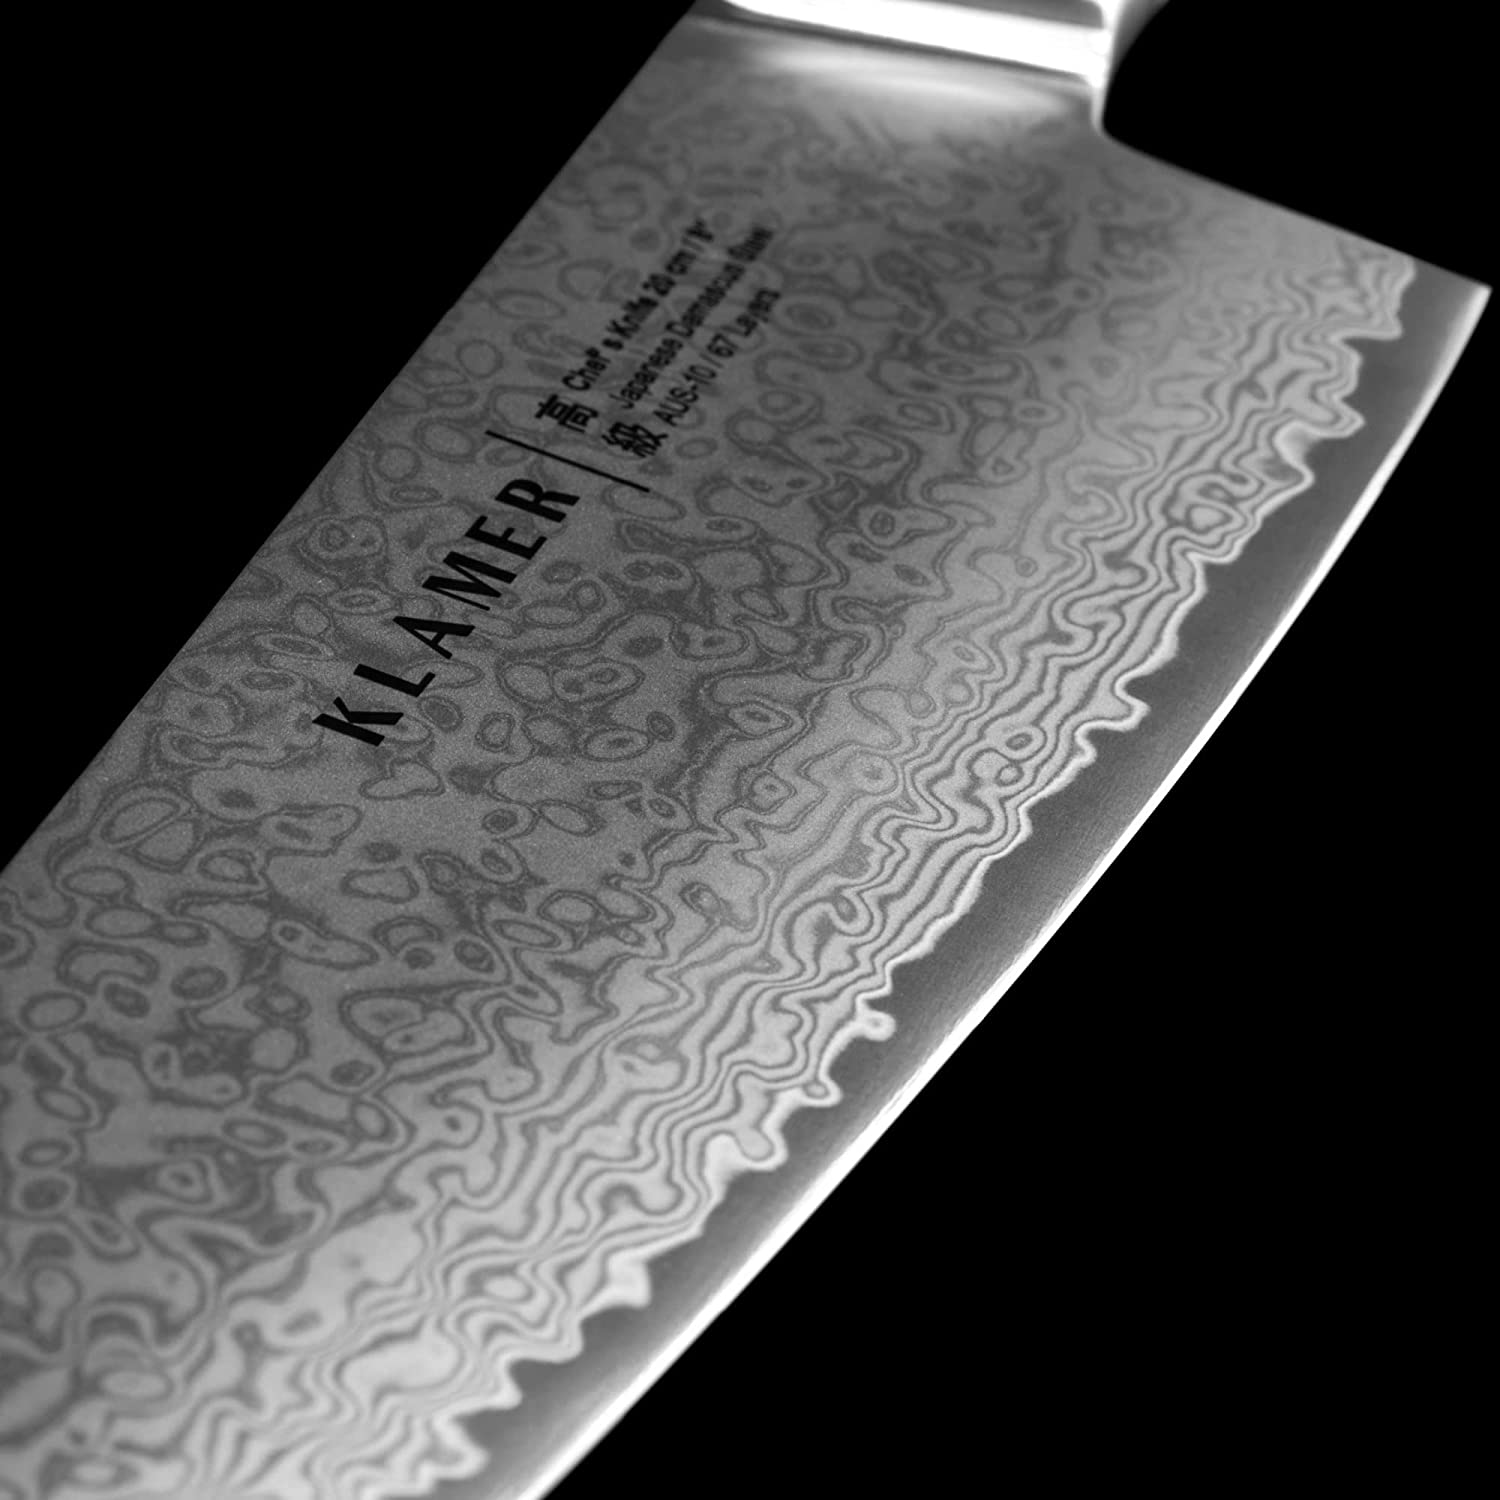 KLAMER Damast Chefmesser 20cm Olivenholz mit Messer